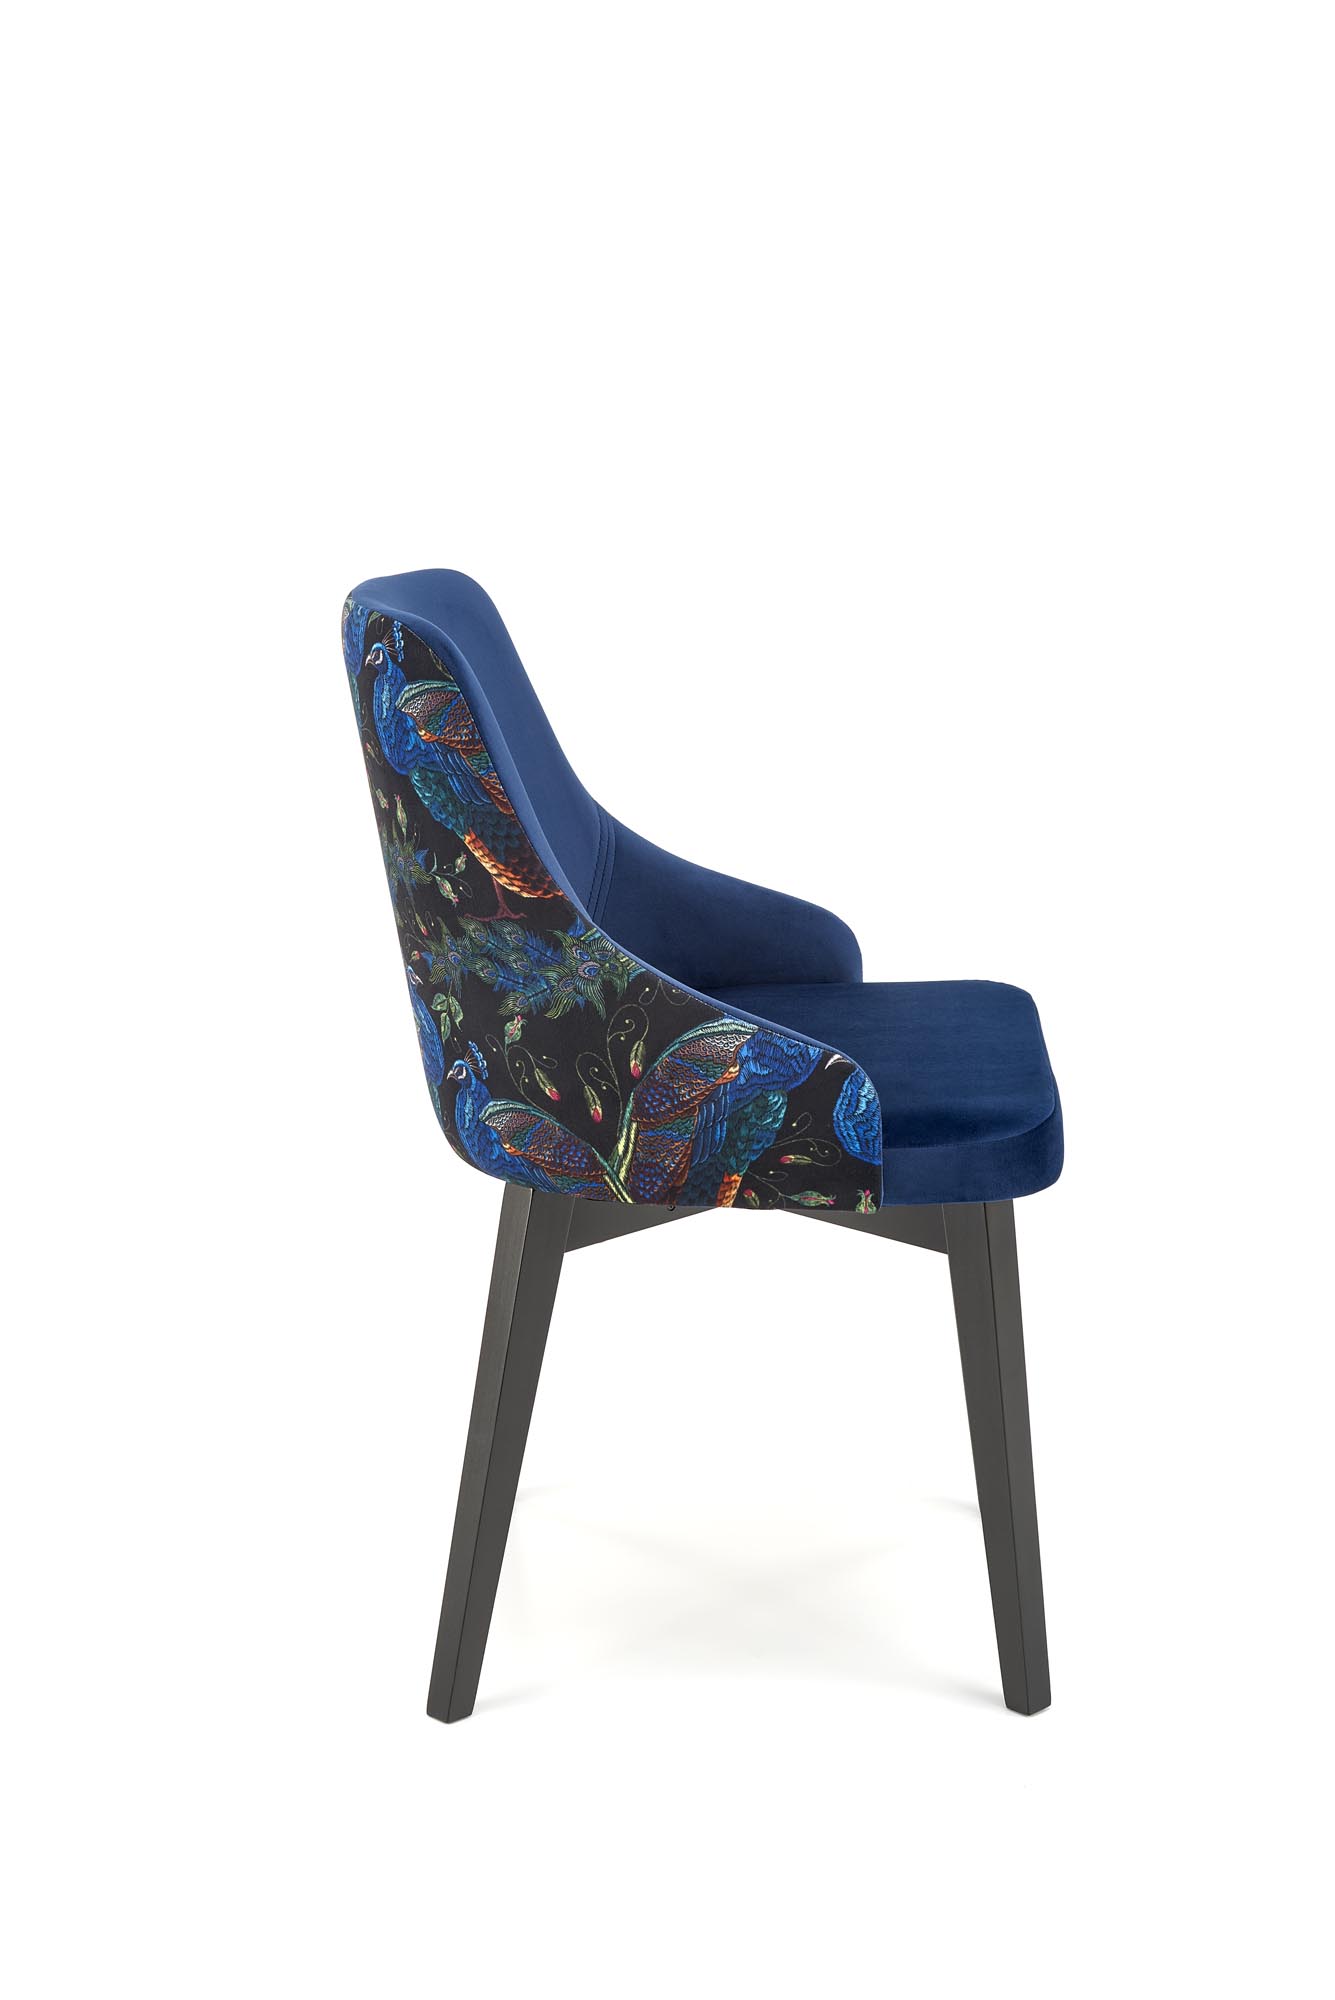 Krzesło tapicerowane Endo - czarny / granat krzesło tapicerowane endo - czarny / granat